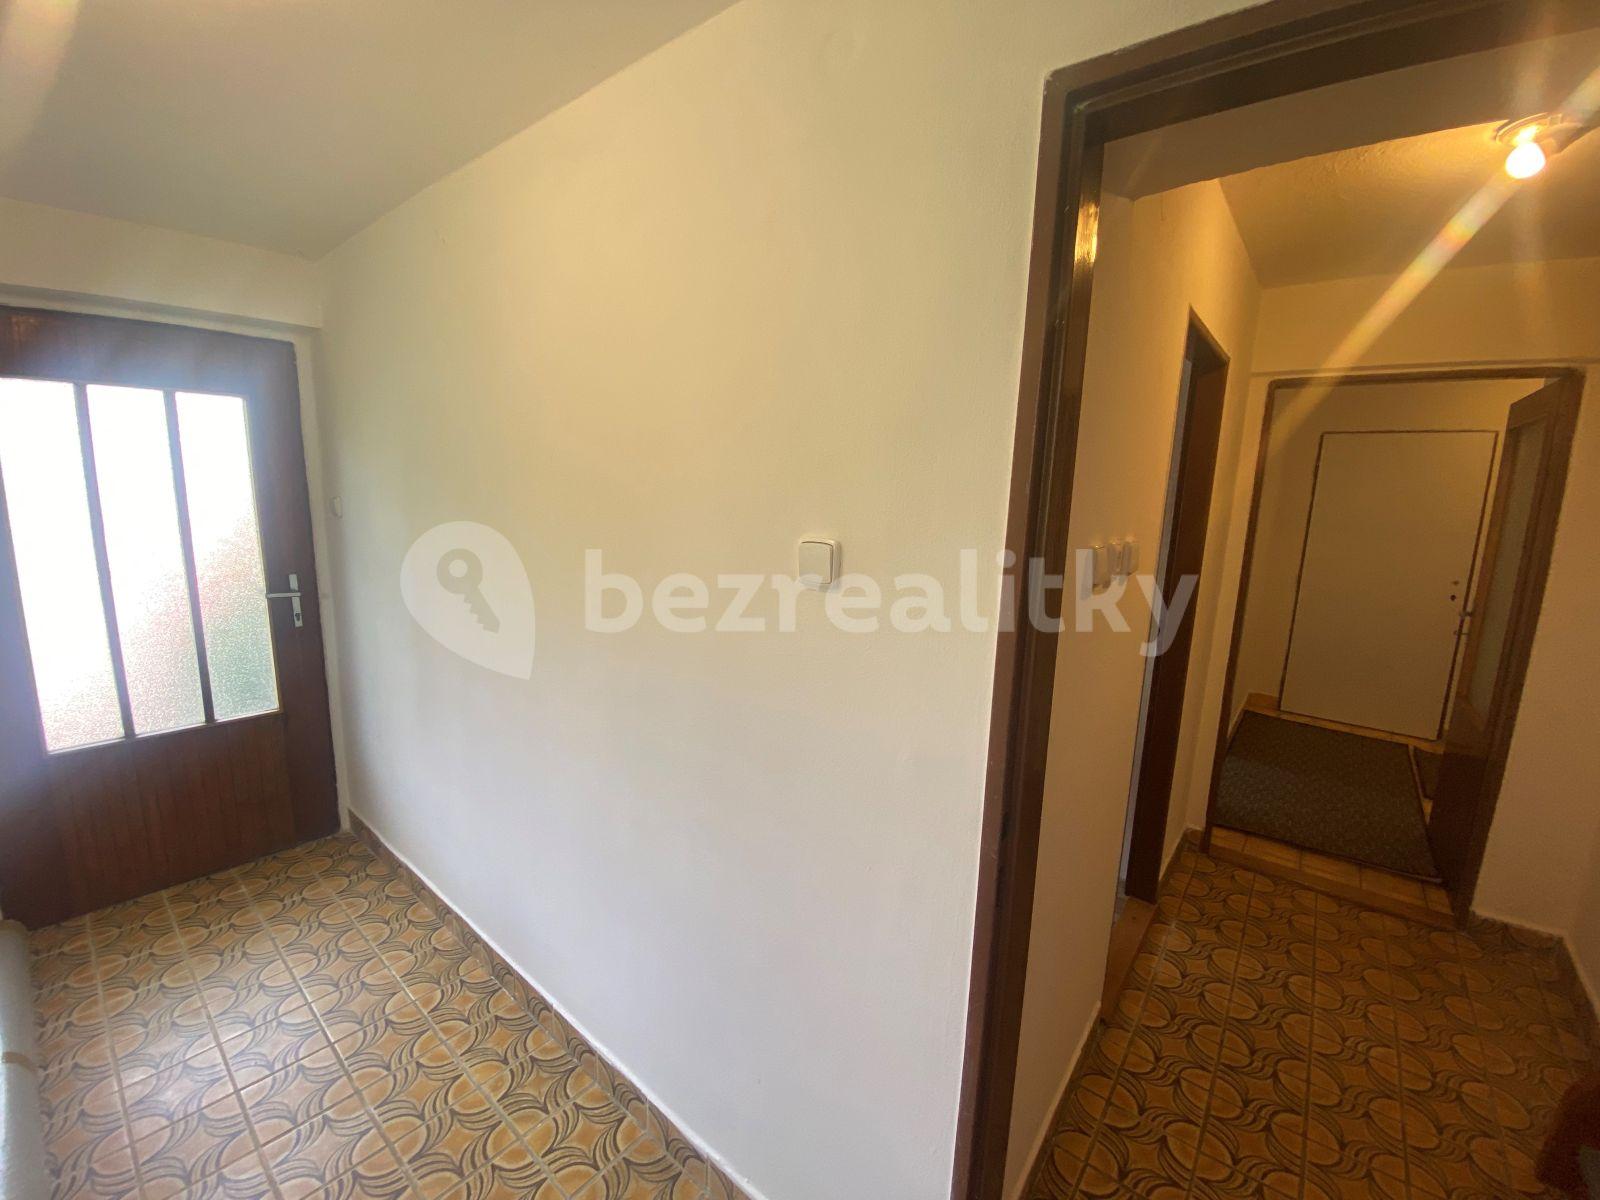 1 bedroom flat to rent, 37 m², Na vyhlídce, Volyně, Jihočeský Region